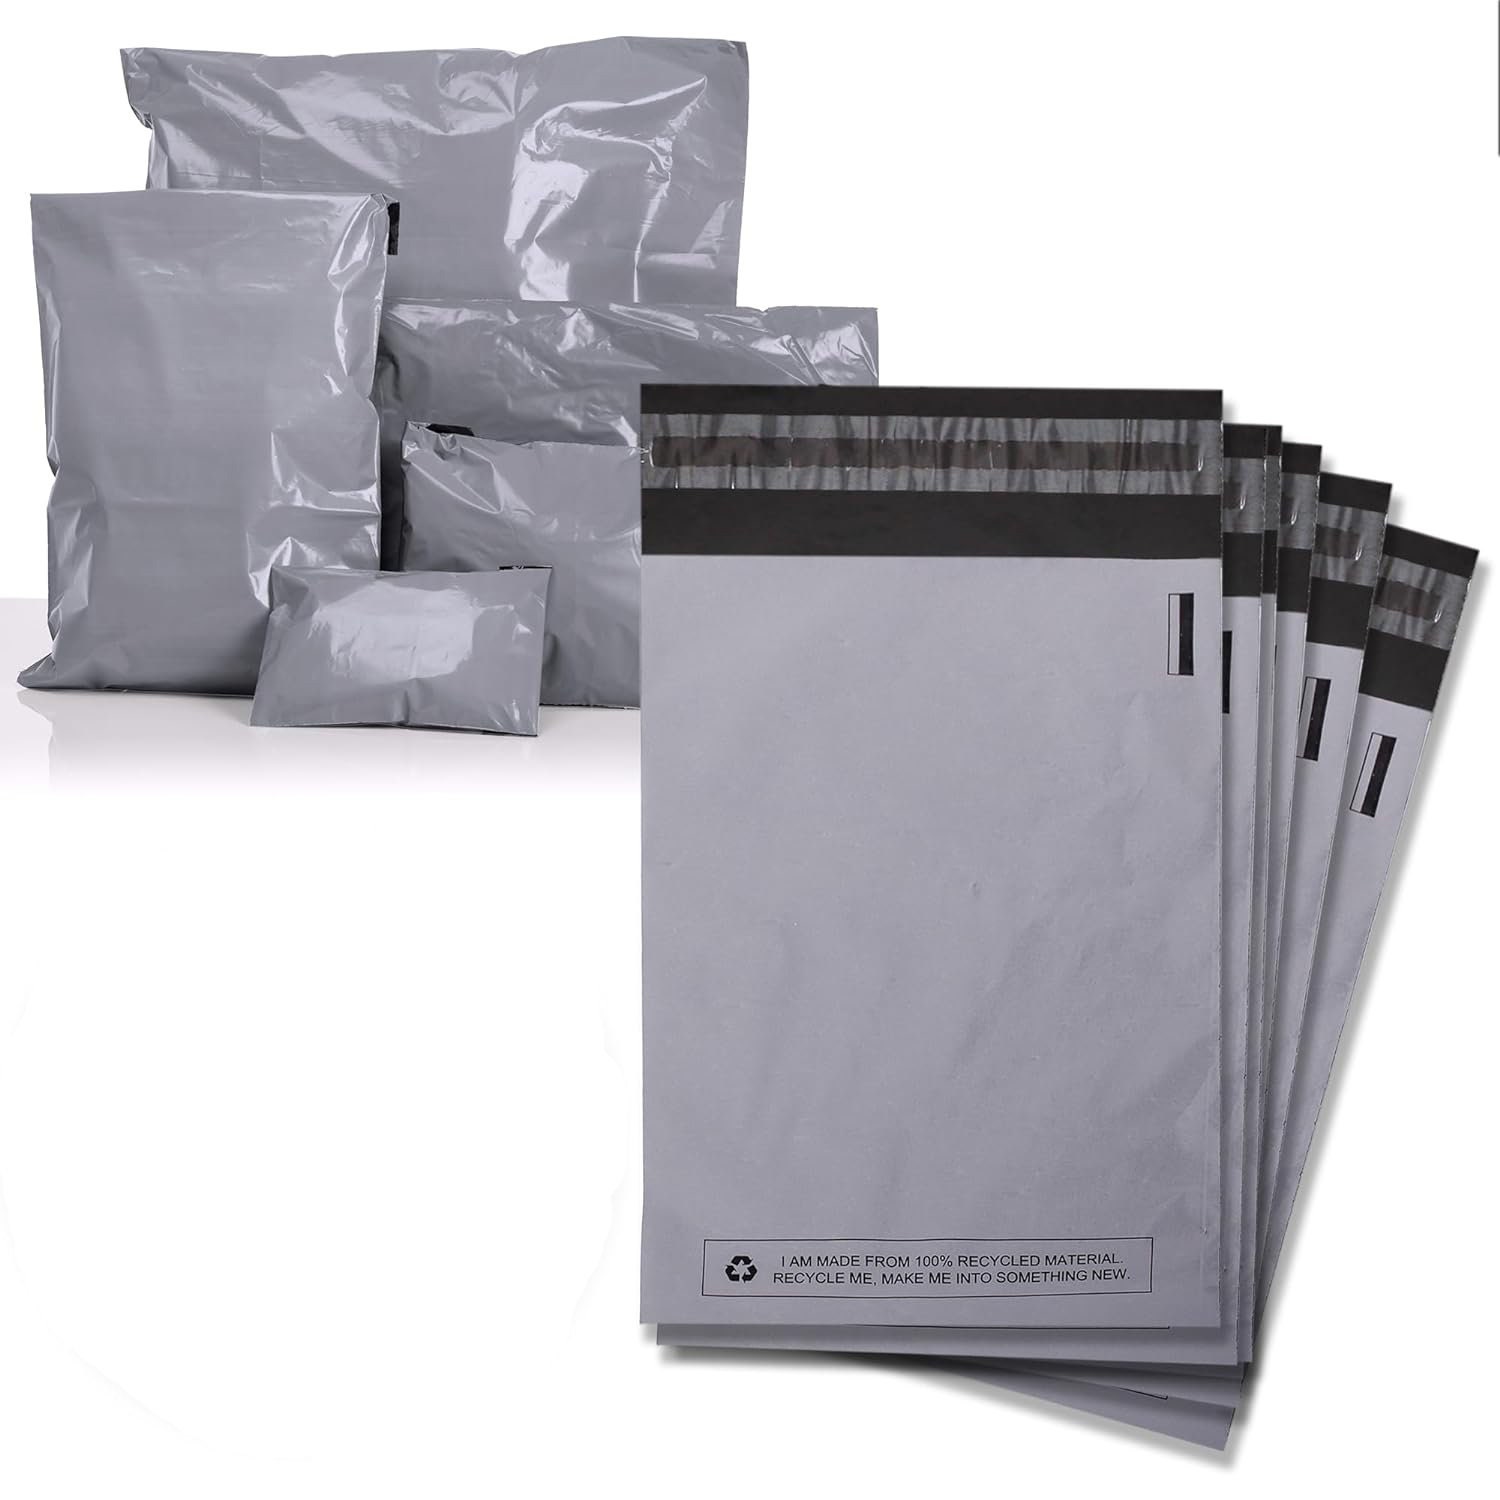 5 Enveloppes Plastique Expedition Sac Envoi Colis Vinted 62 x 70